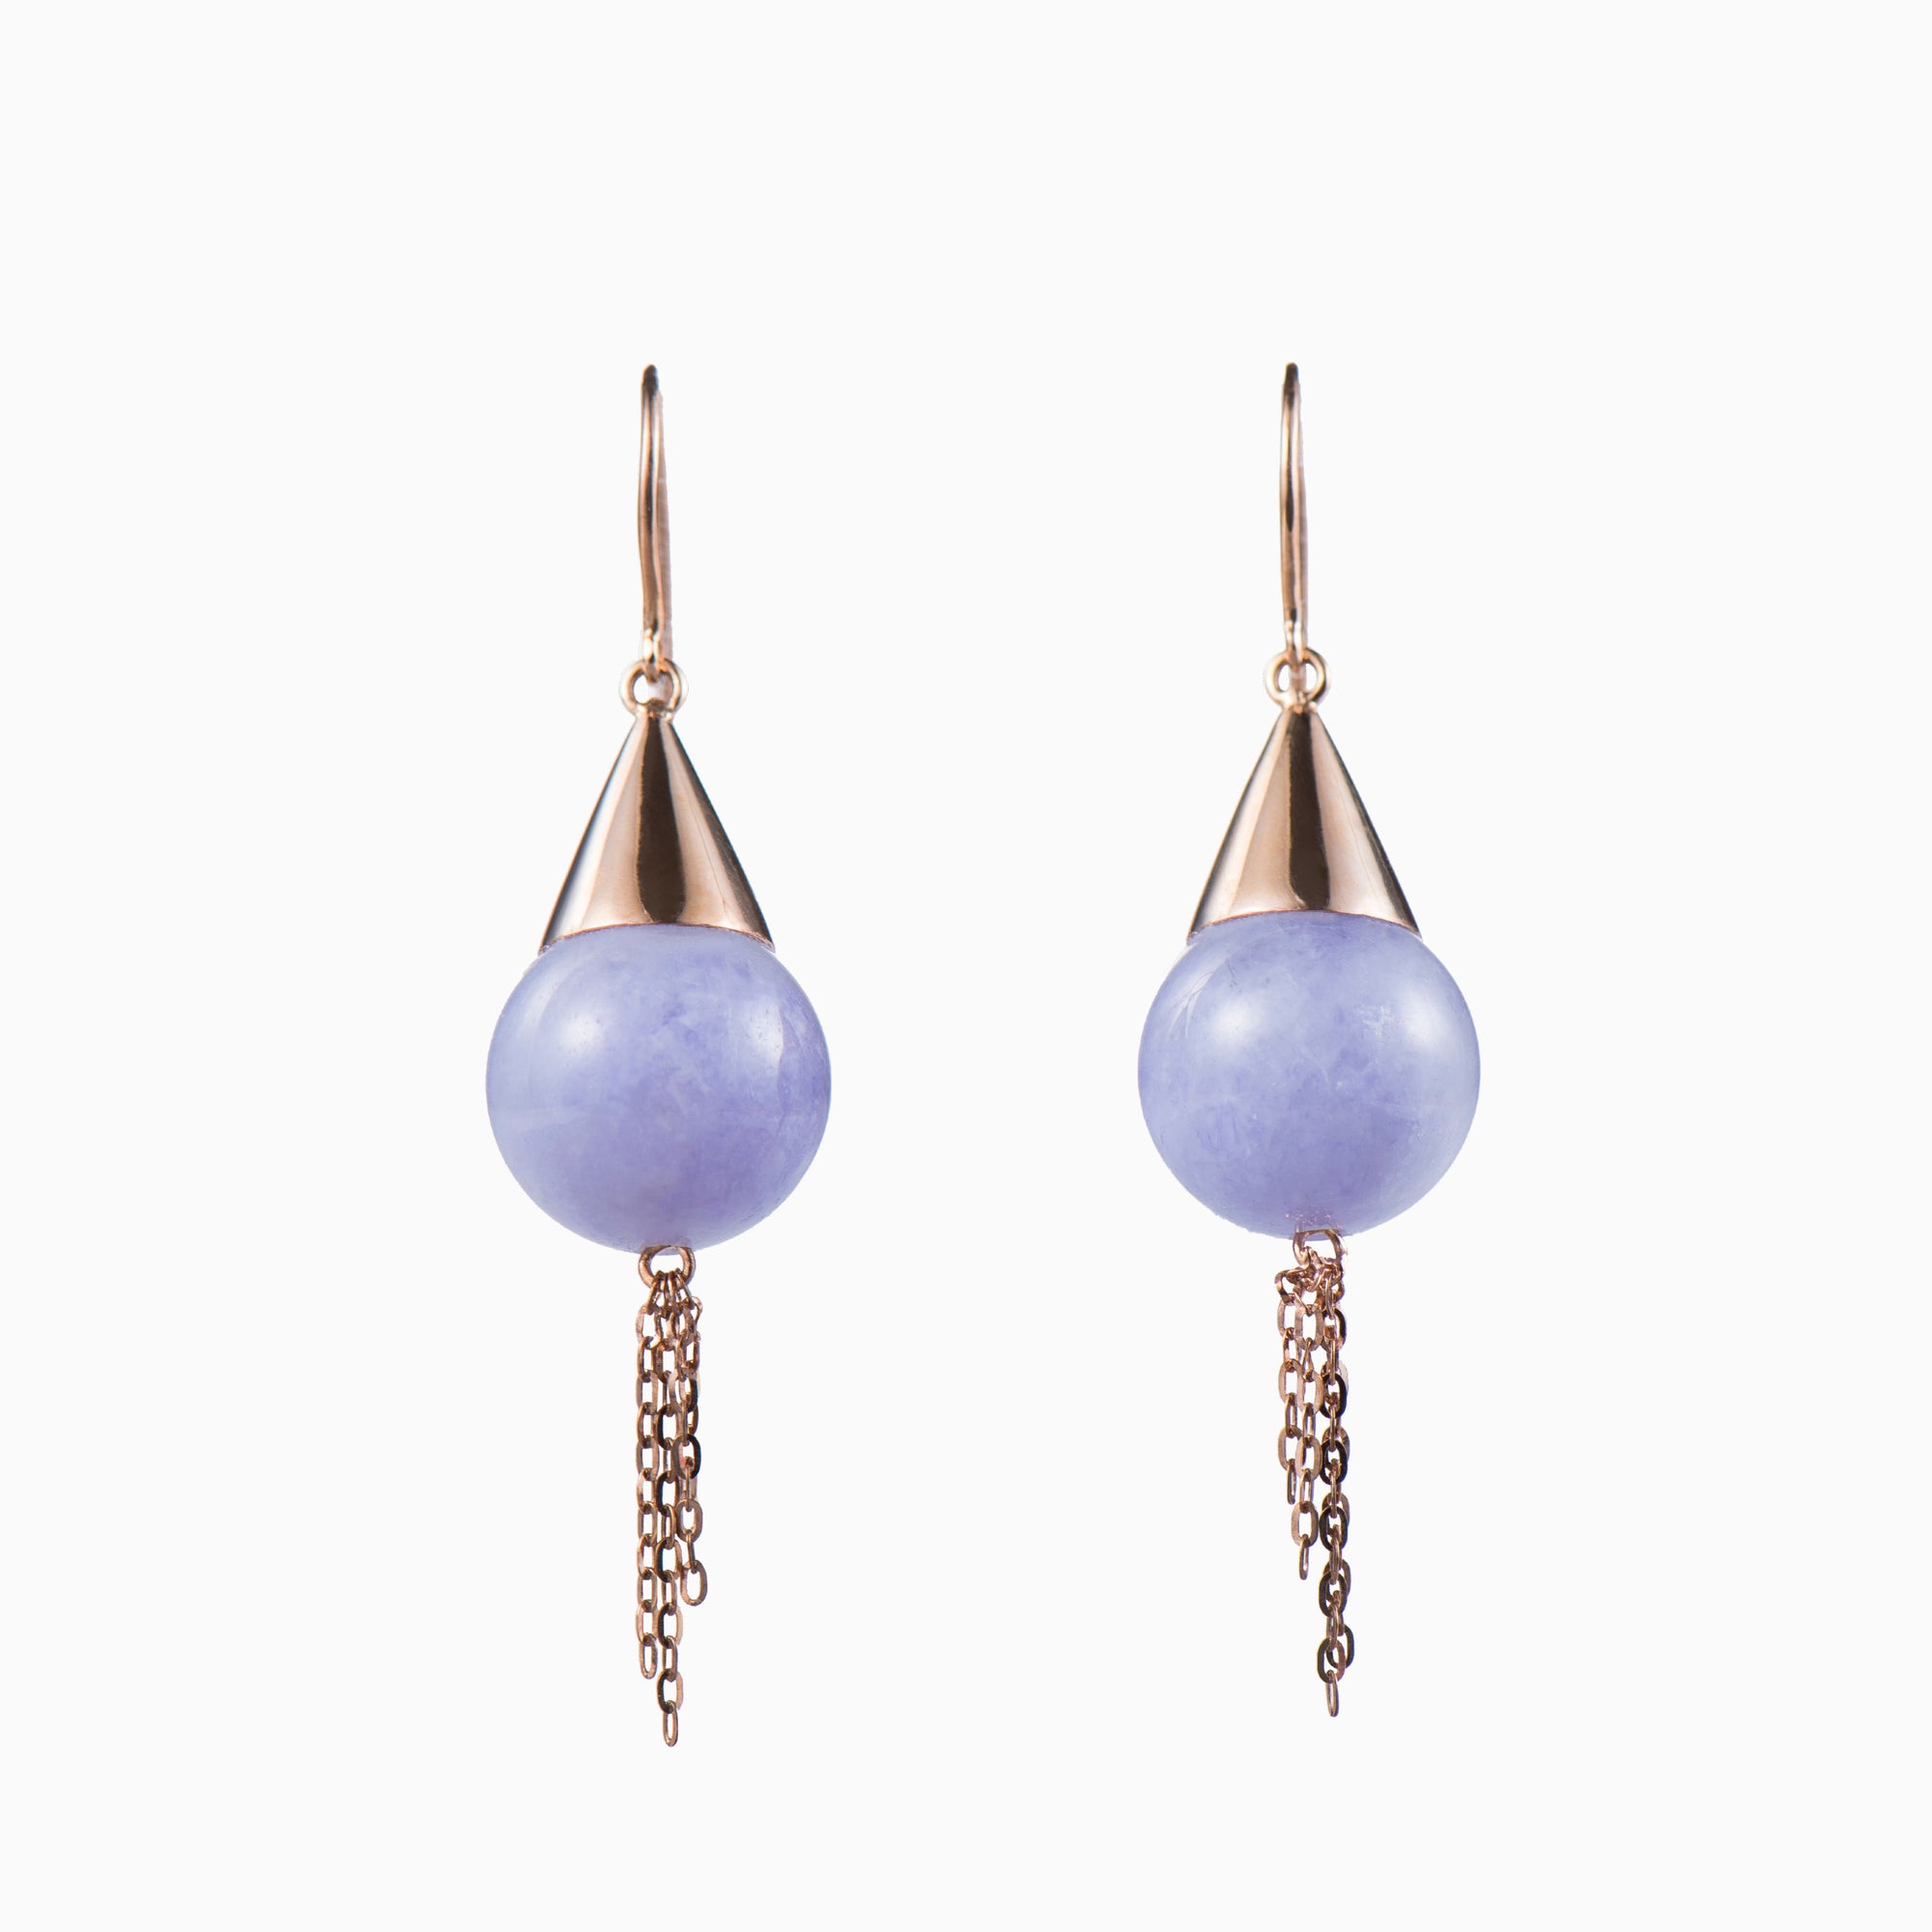 Genuine lavender jade earrings with 18k rose gold